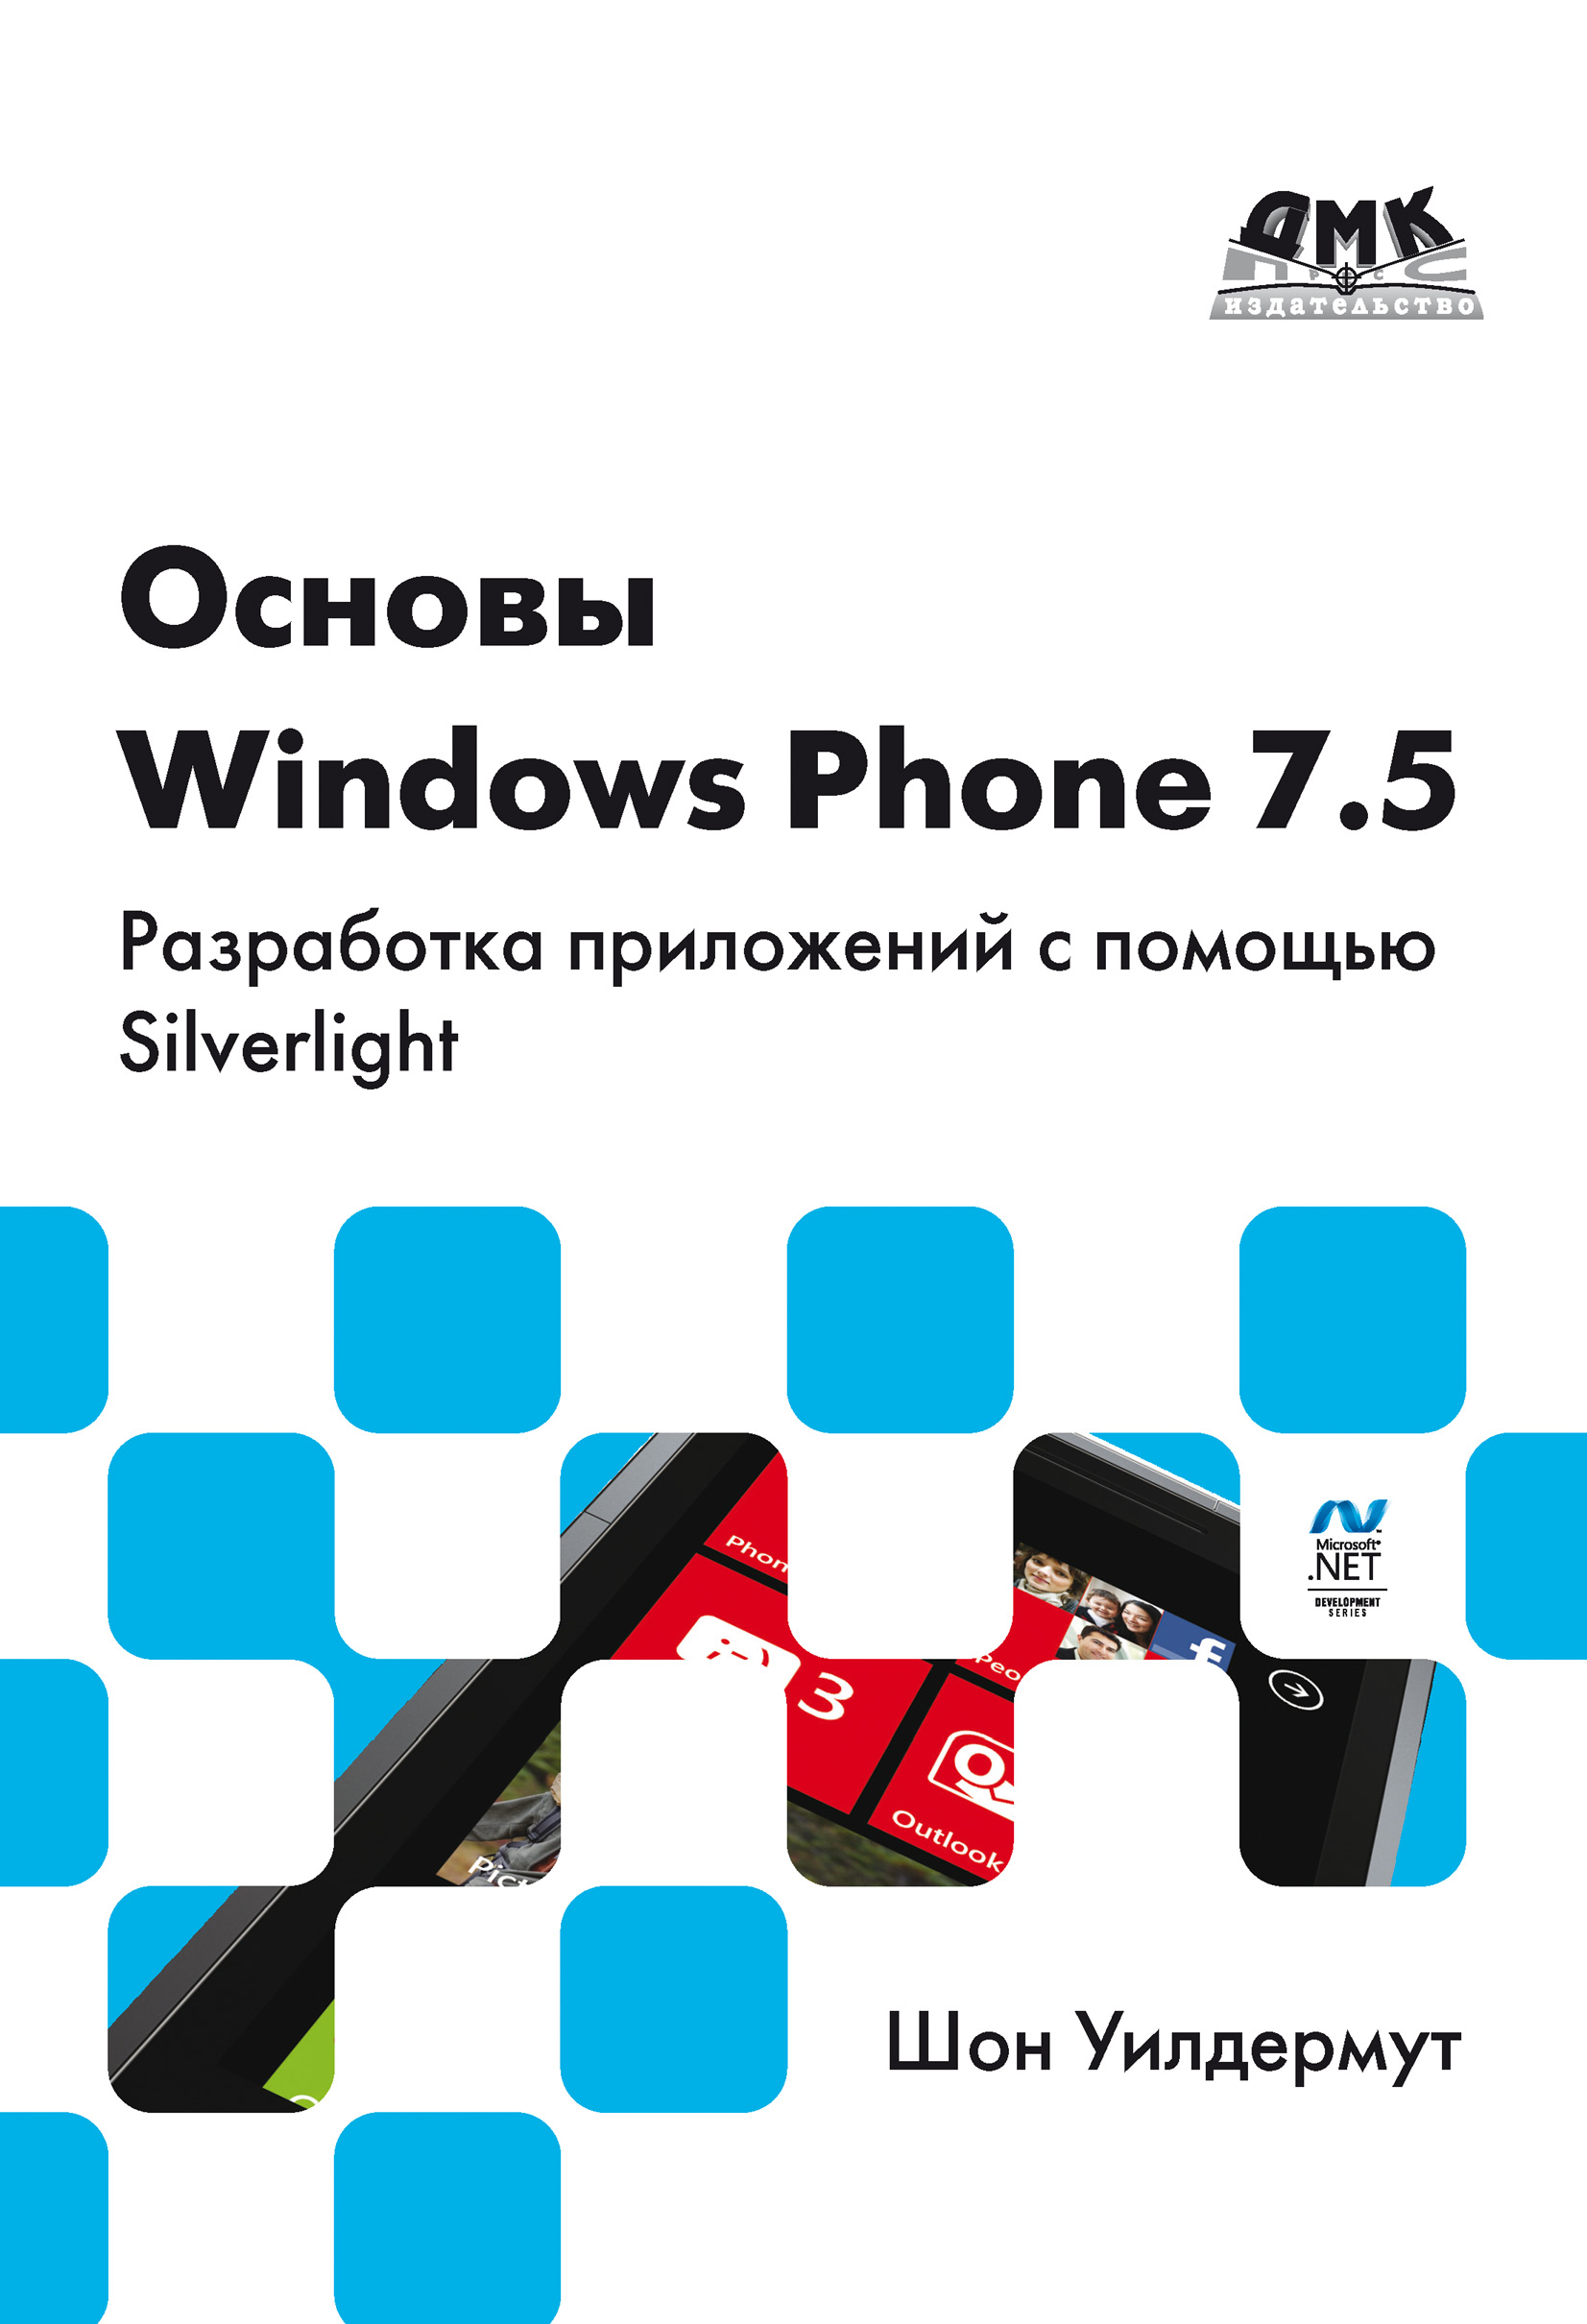 Книга  Основы Windows Phone 7.5. Разработка приложений с помощью Silverlight созданная Шон Уилдермут, А. А. Слинкин может относится к жанру зарубежная компьютерная литература, компьютерное железо, программирование. Стоимость электронной книги Основы Windows Phone 7.5. Разработка приложений с помощью Silverlight с идентификатором 6700358 составляет 359.00 руб.